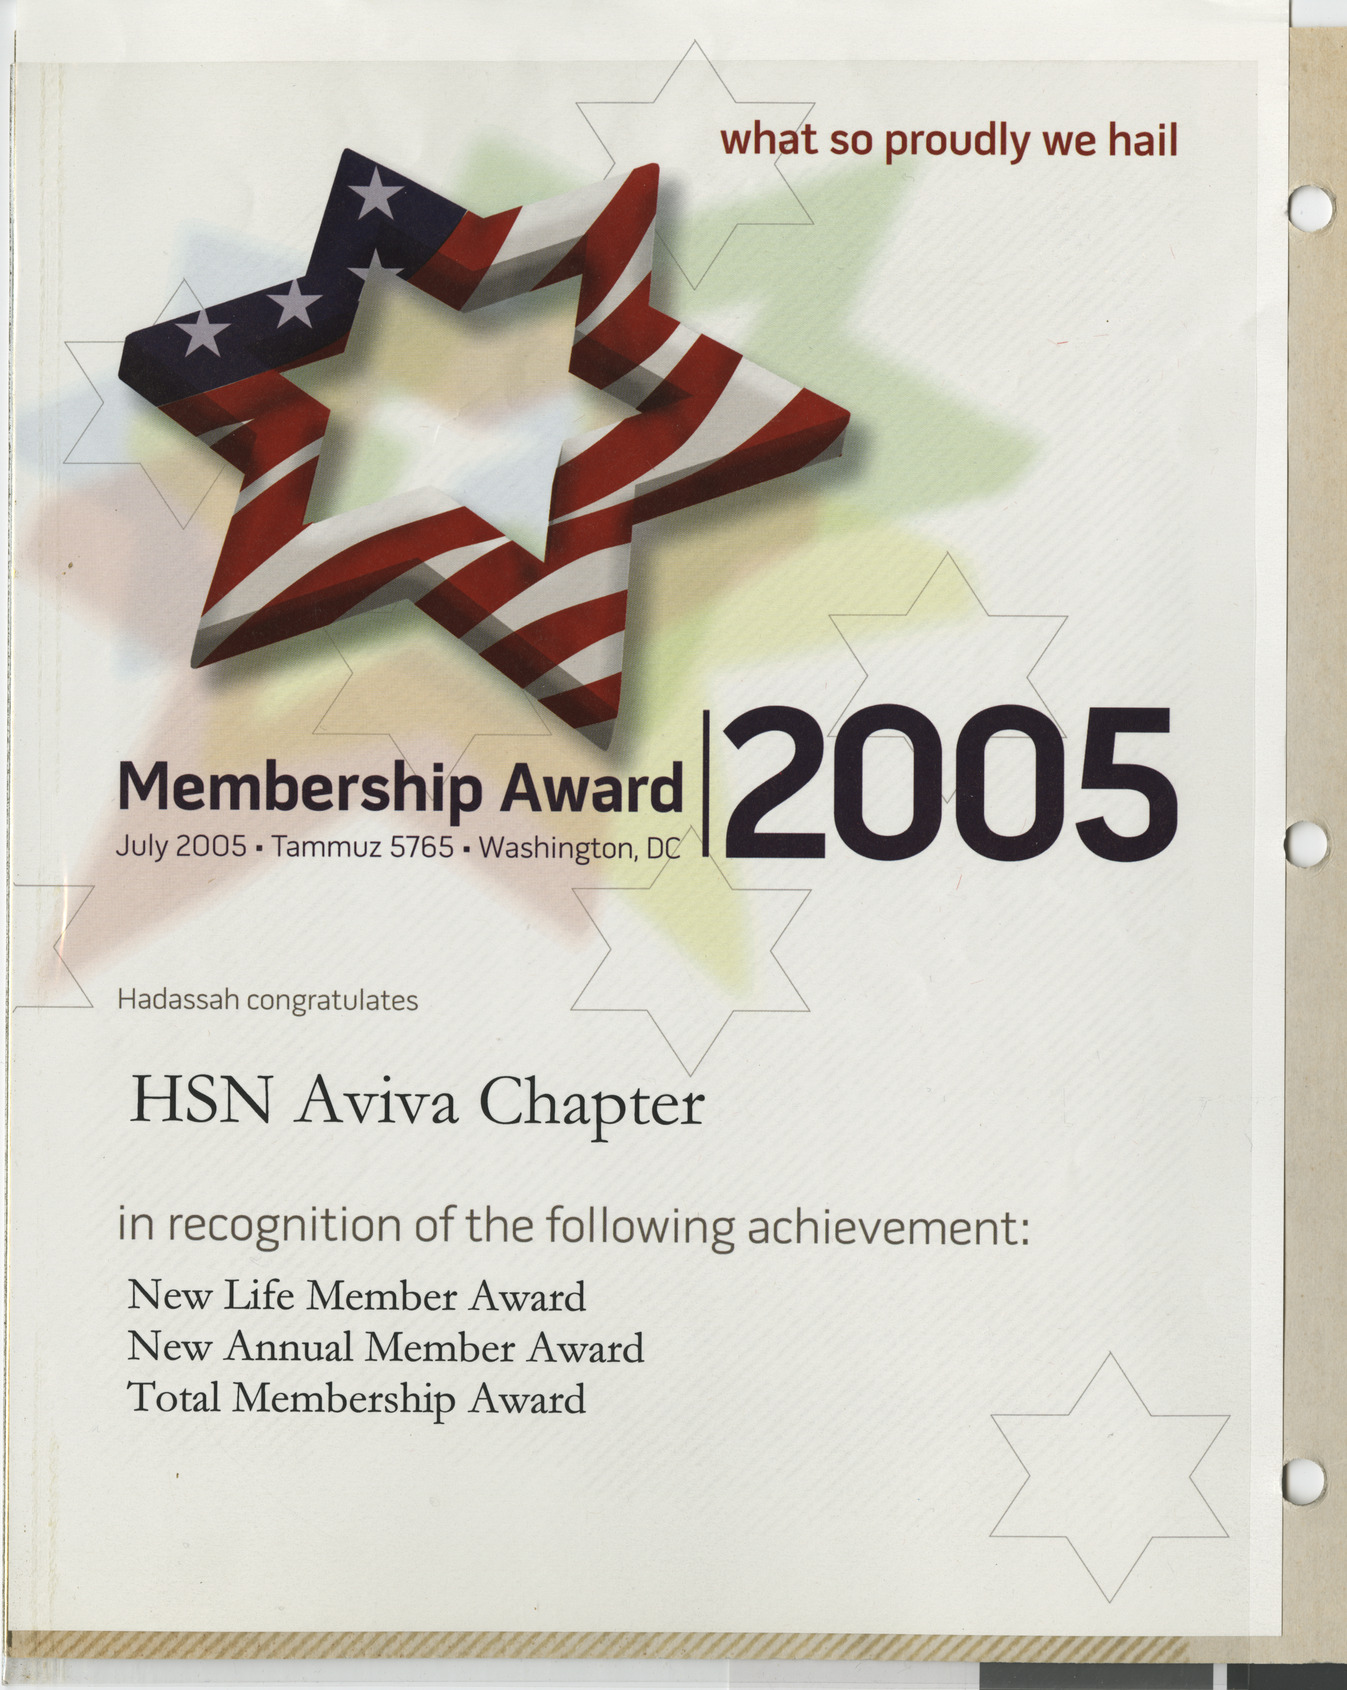 Membership award for HSN Aviva Chapter, July 2005